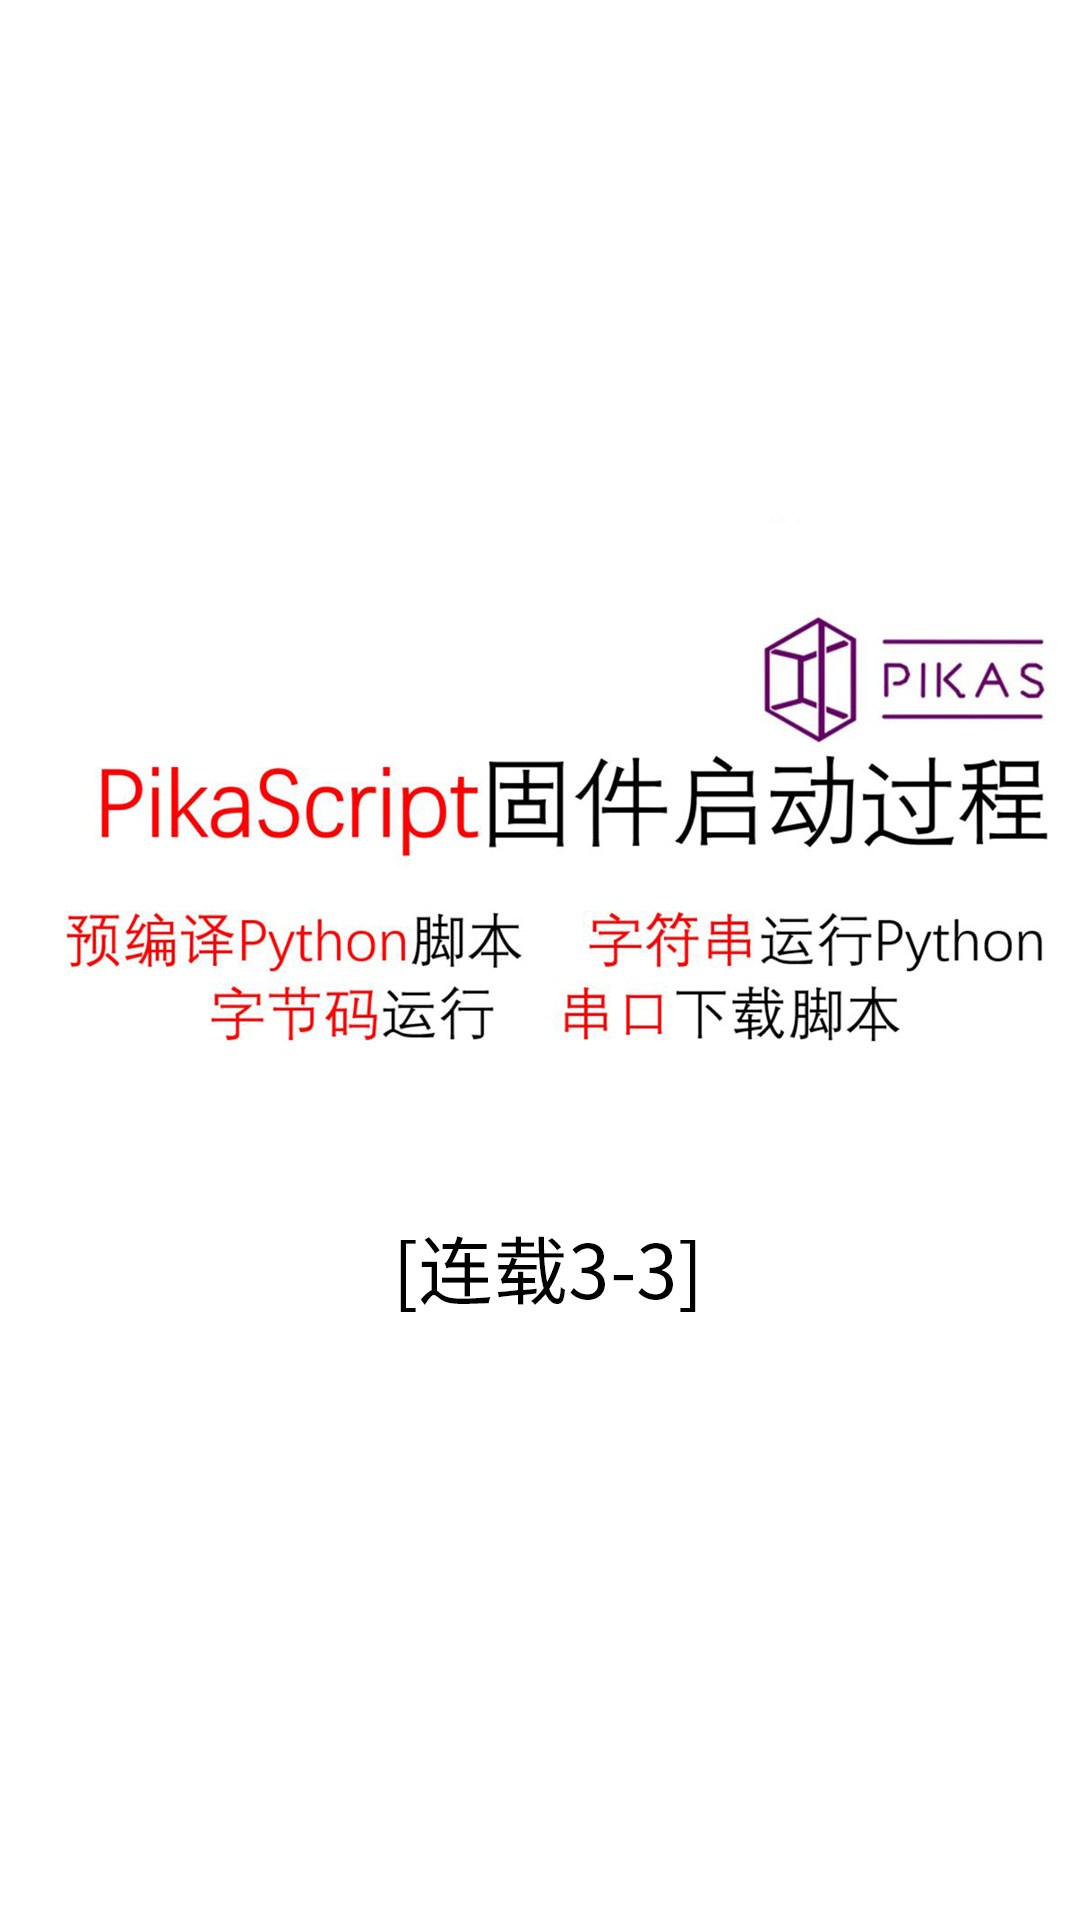 【连载03-3】固件启动方式--#Pika派开发板 手把手单片机python编程